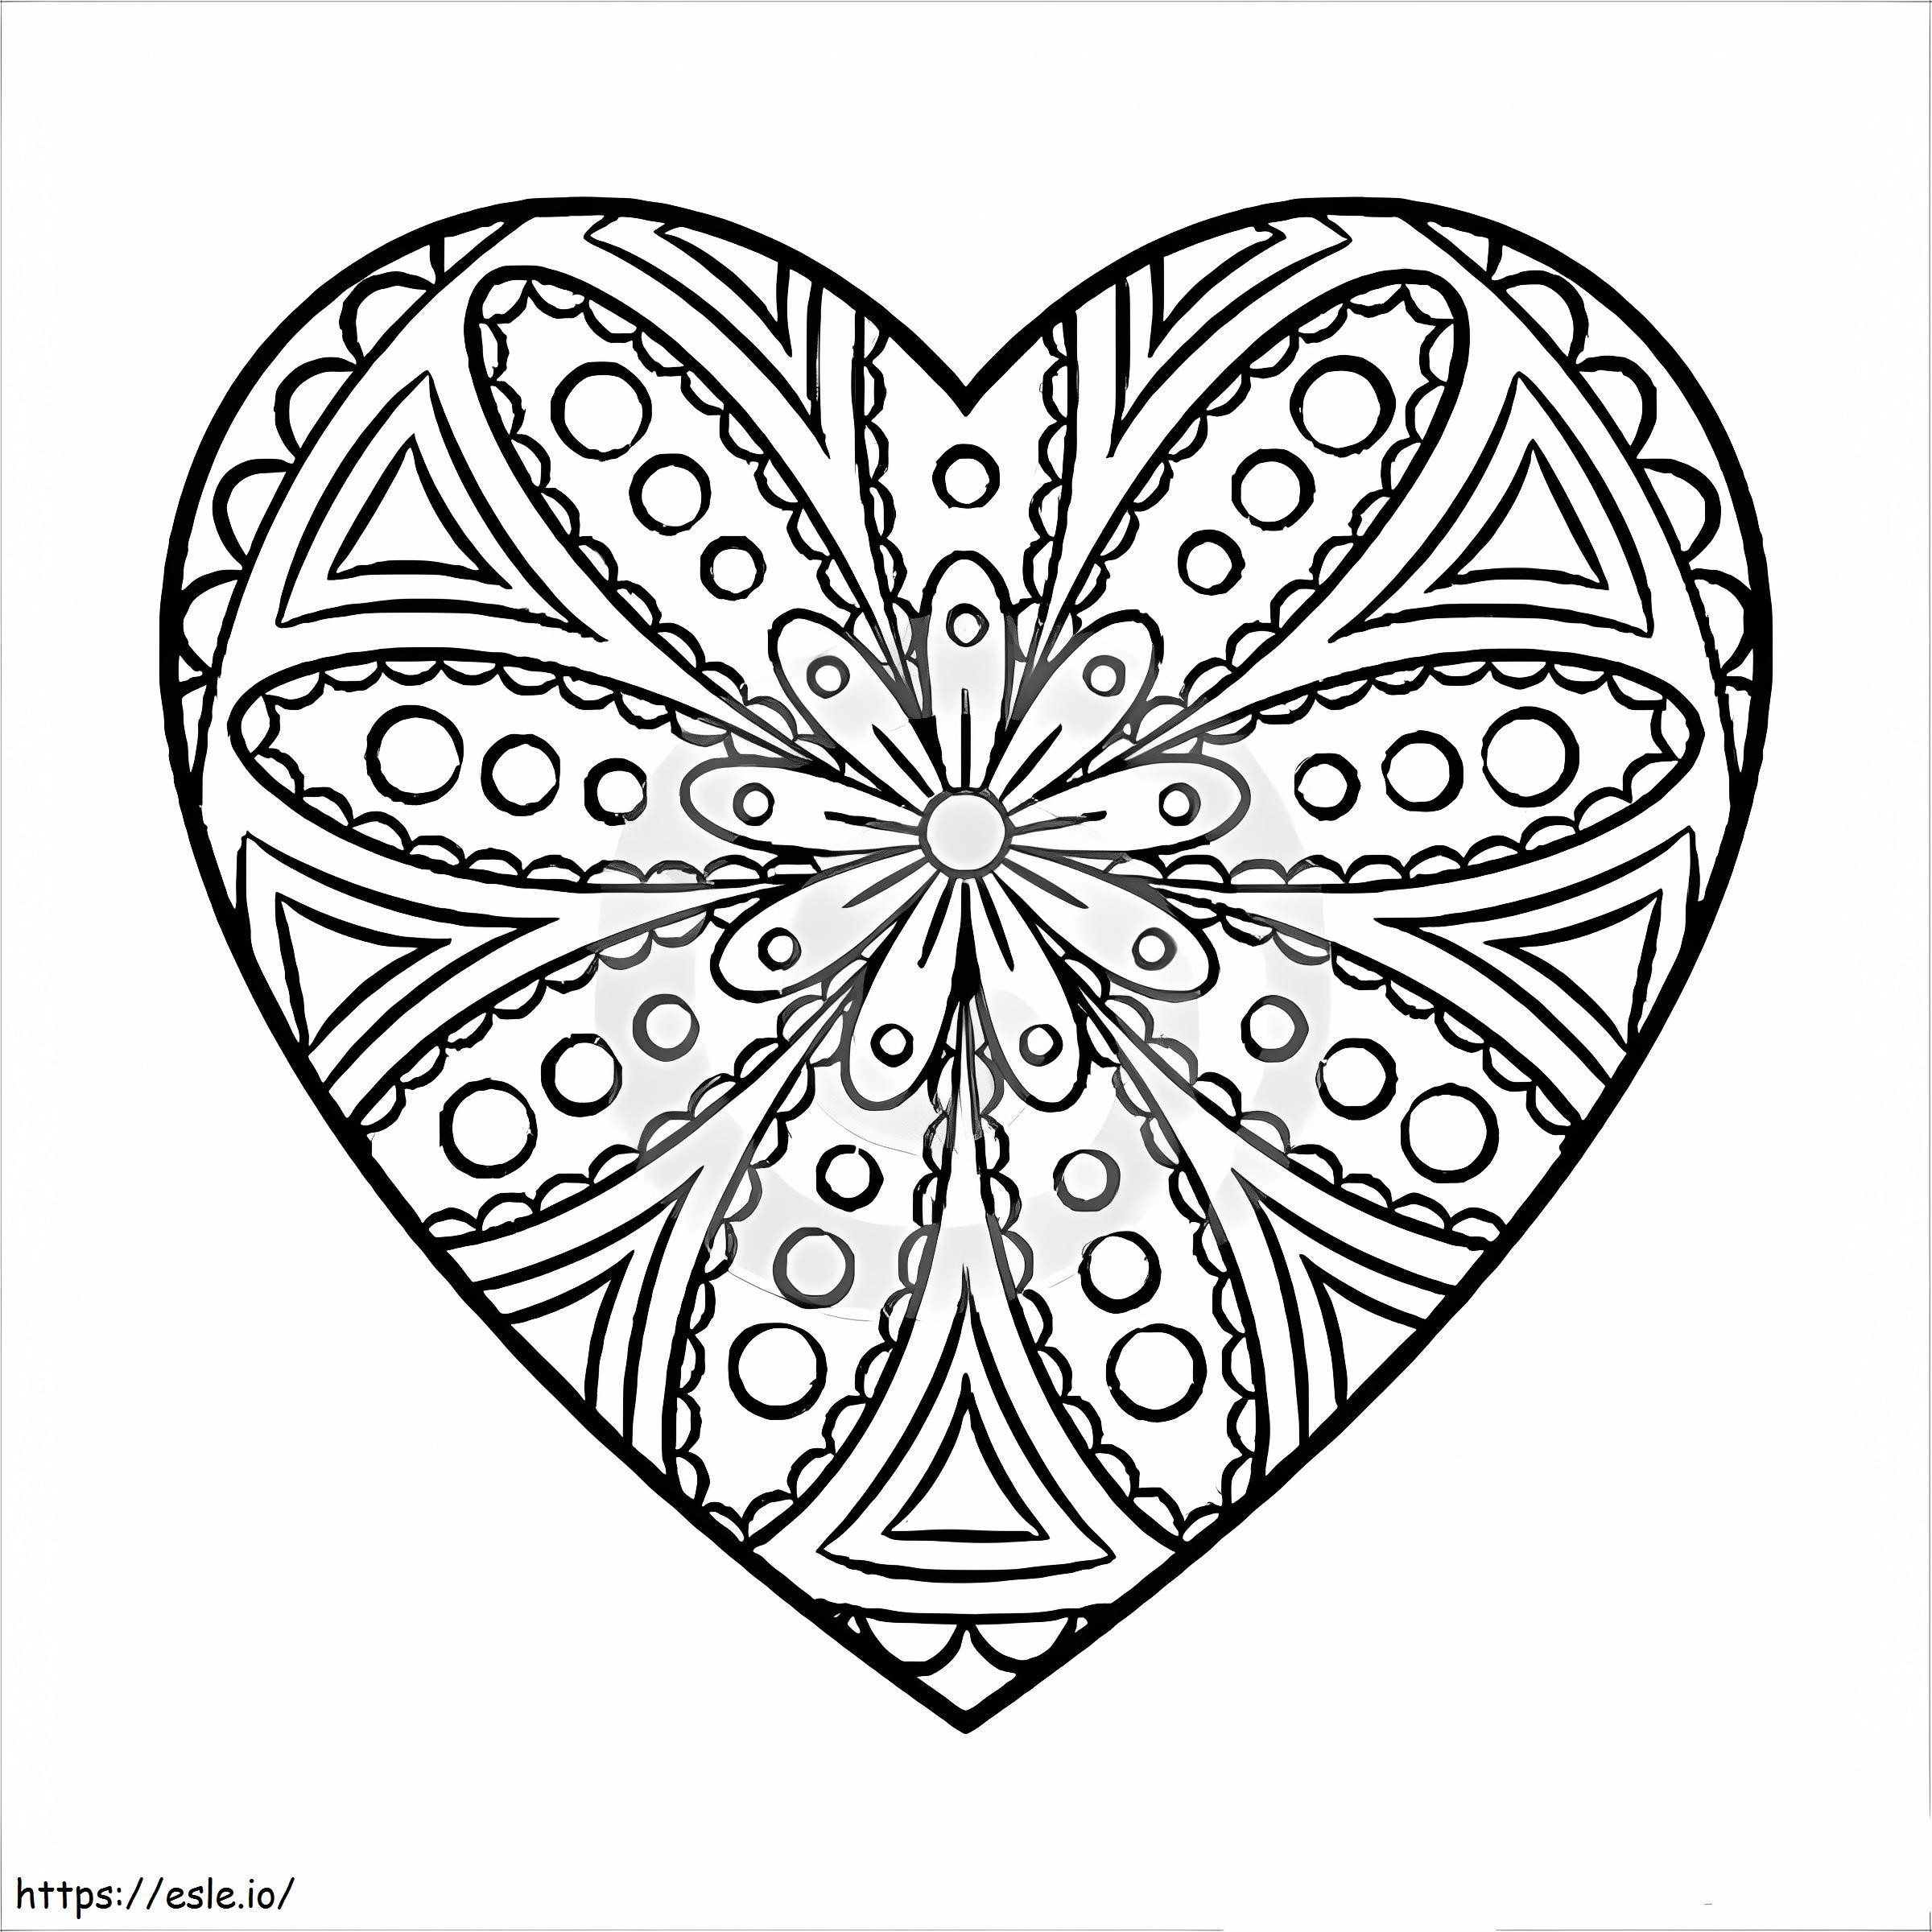 Mandala Heart coloring page